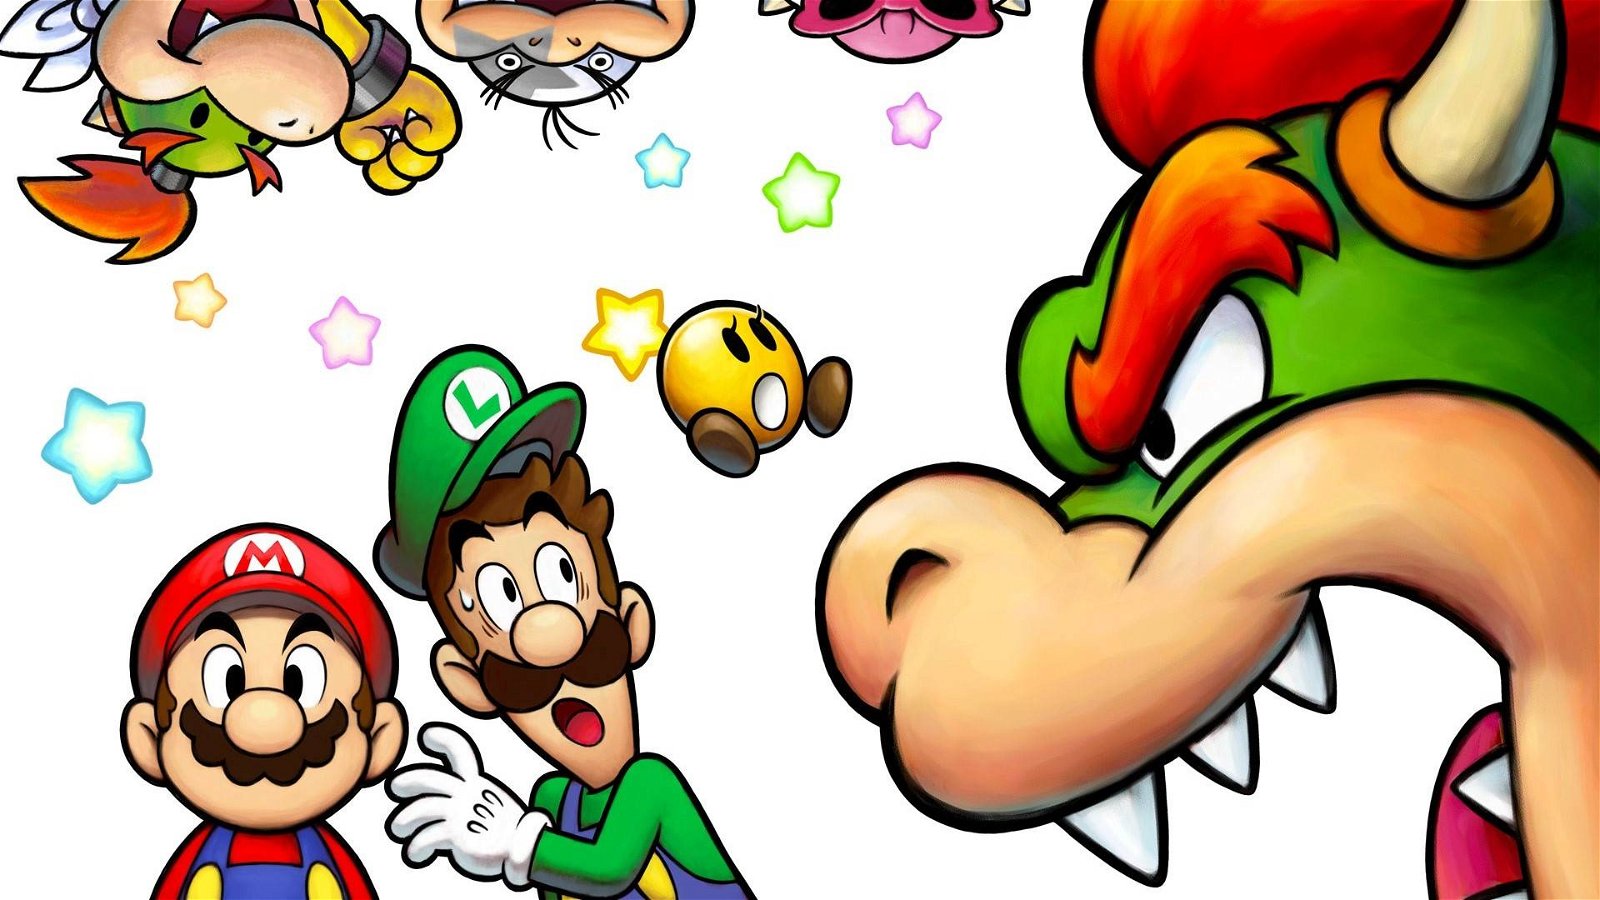 Immagine di Mario e Luigi: sviluppatori dichiarano bancarotta